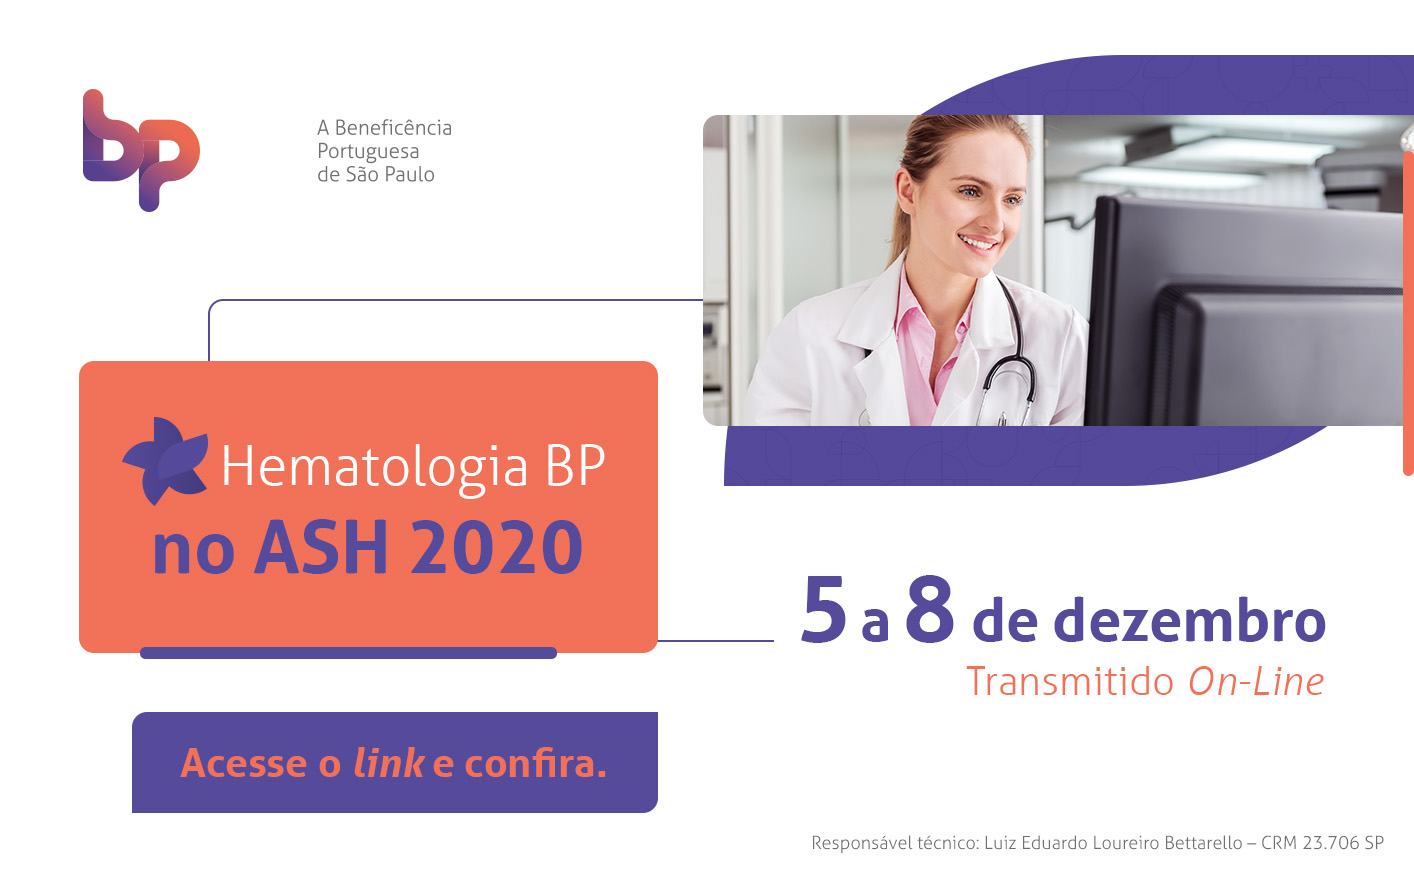 BP no ASH 2020